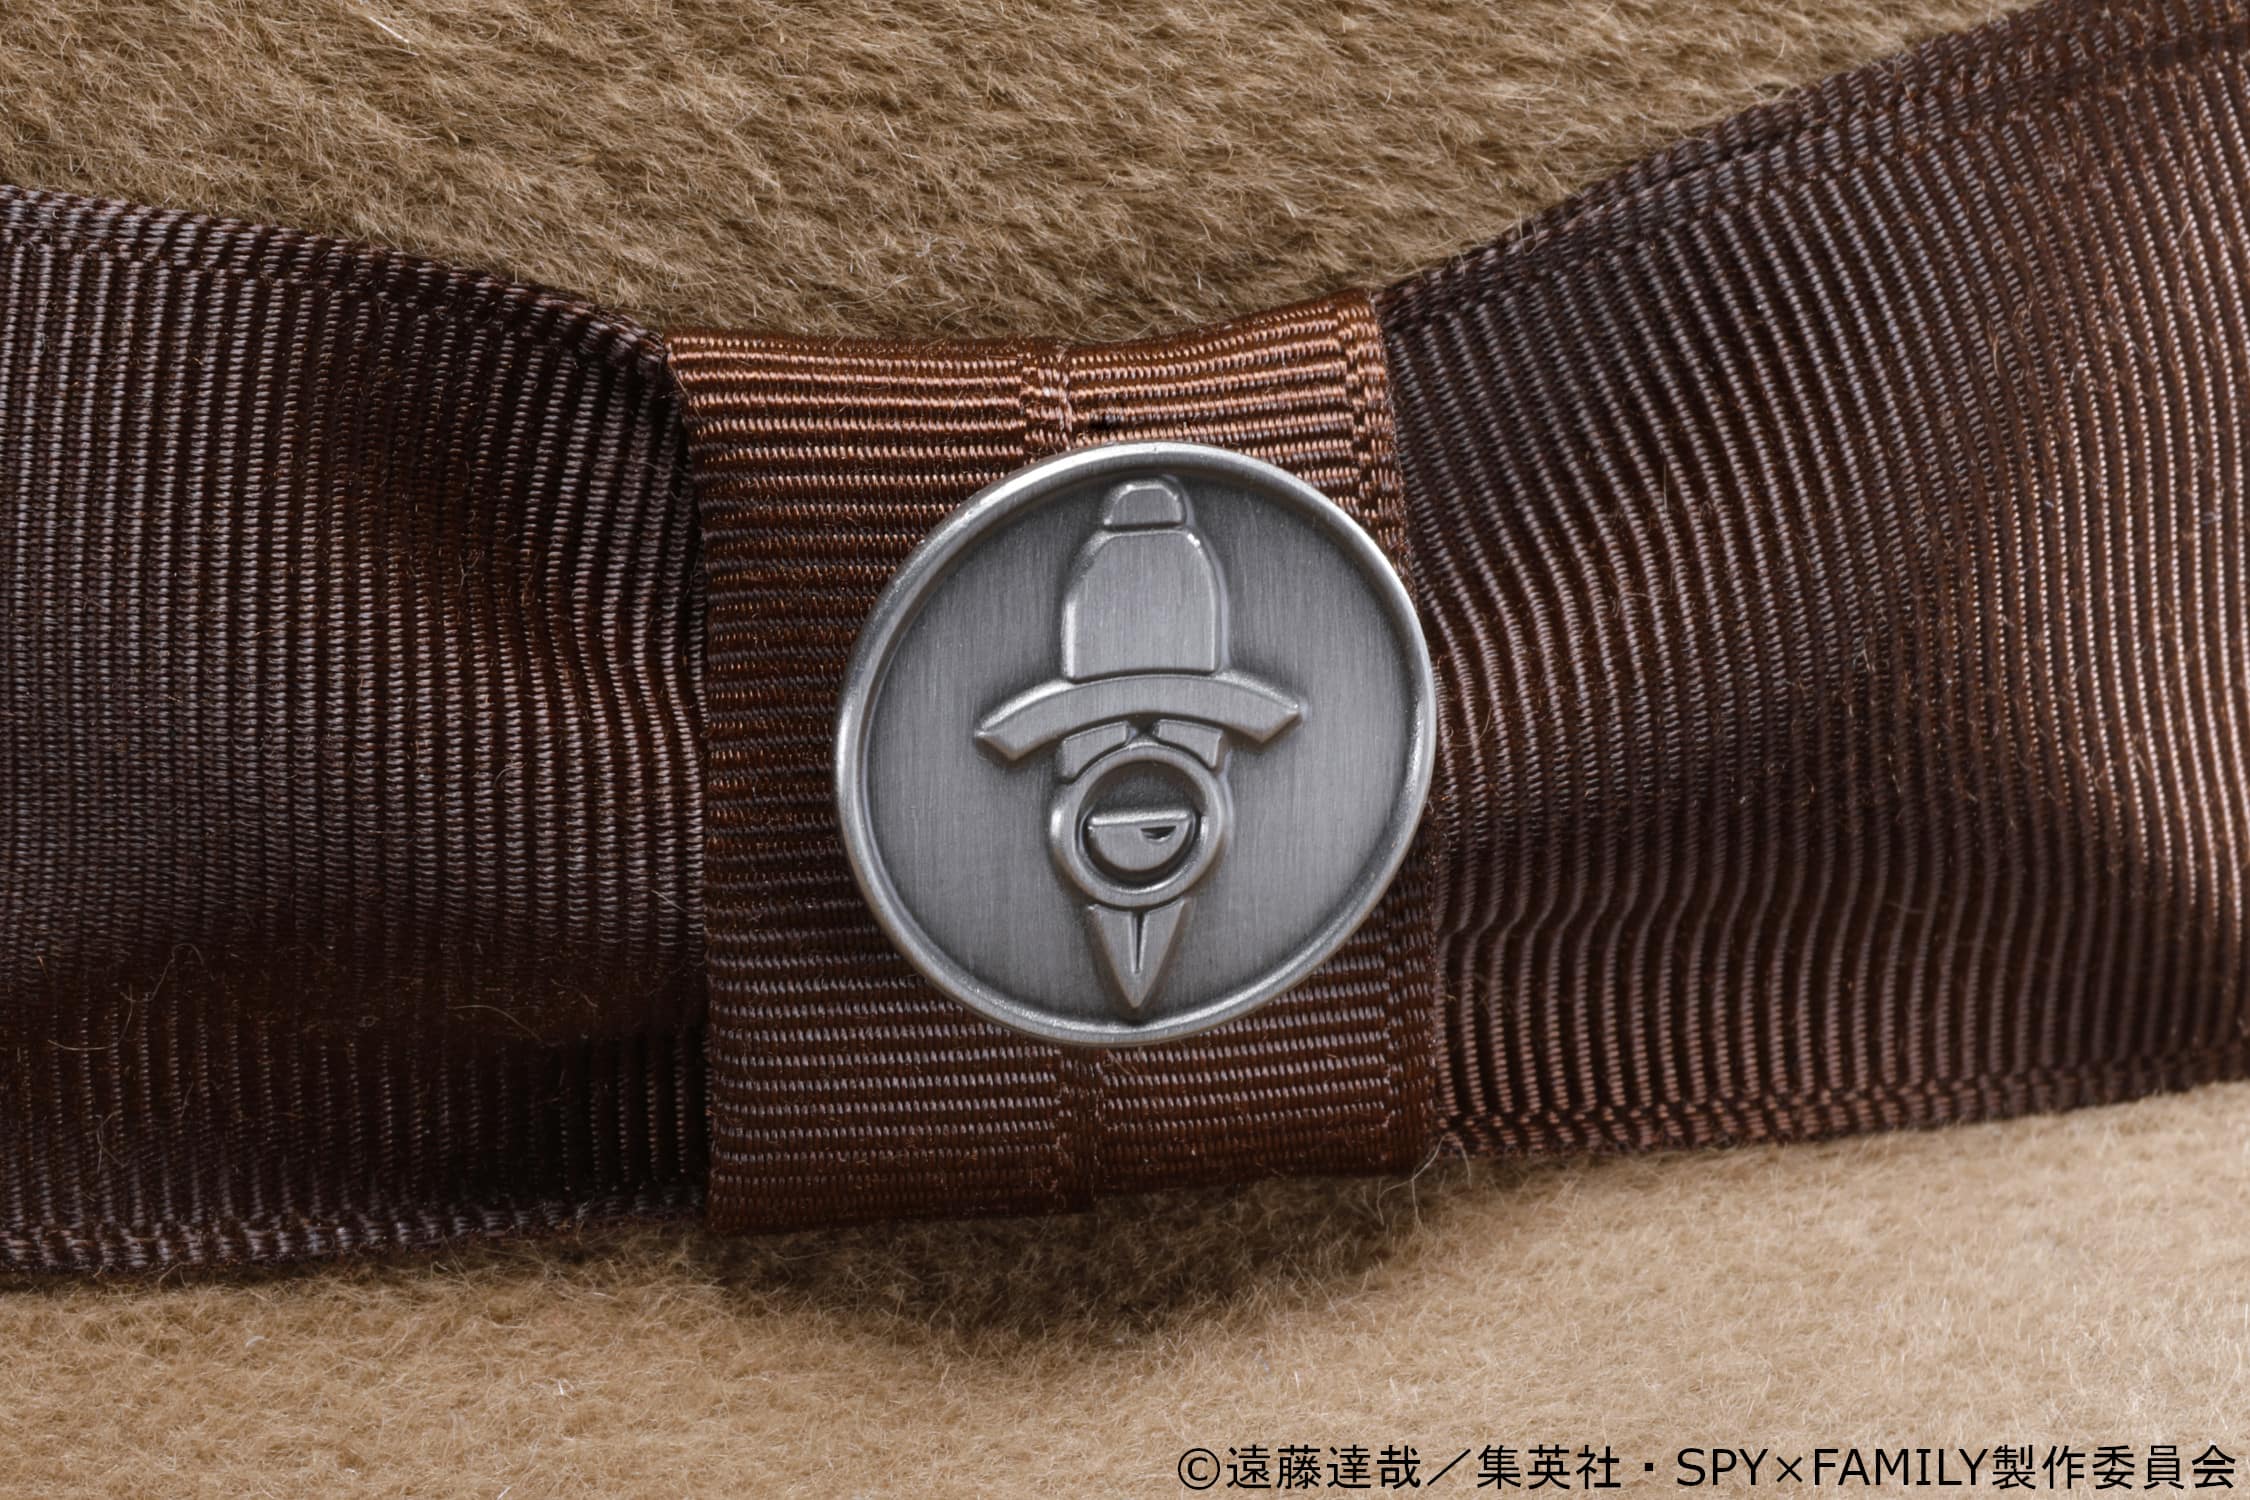 Ryokotomo - 1656126224 48 25e1b116 ca4la releases spy x family hats inspired by loid and